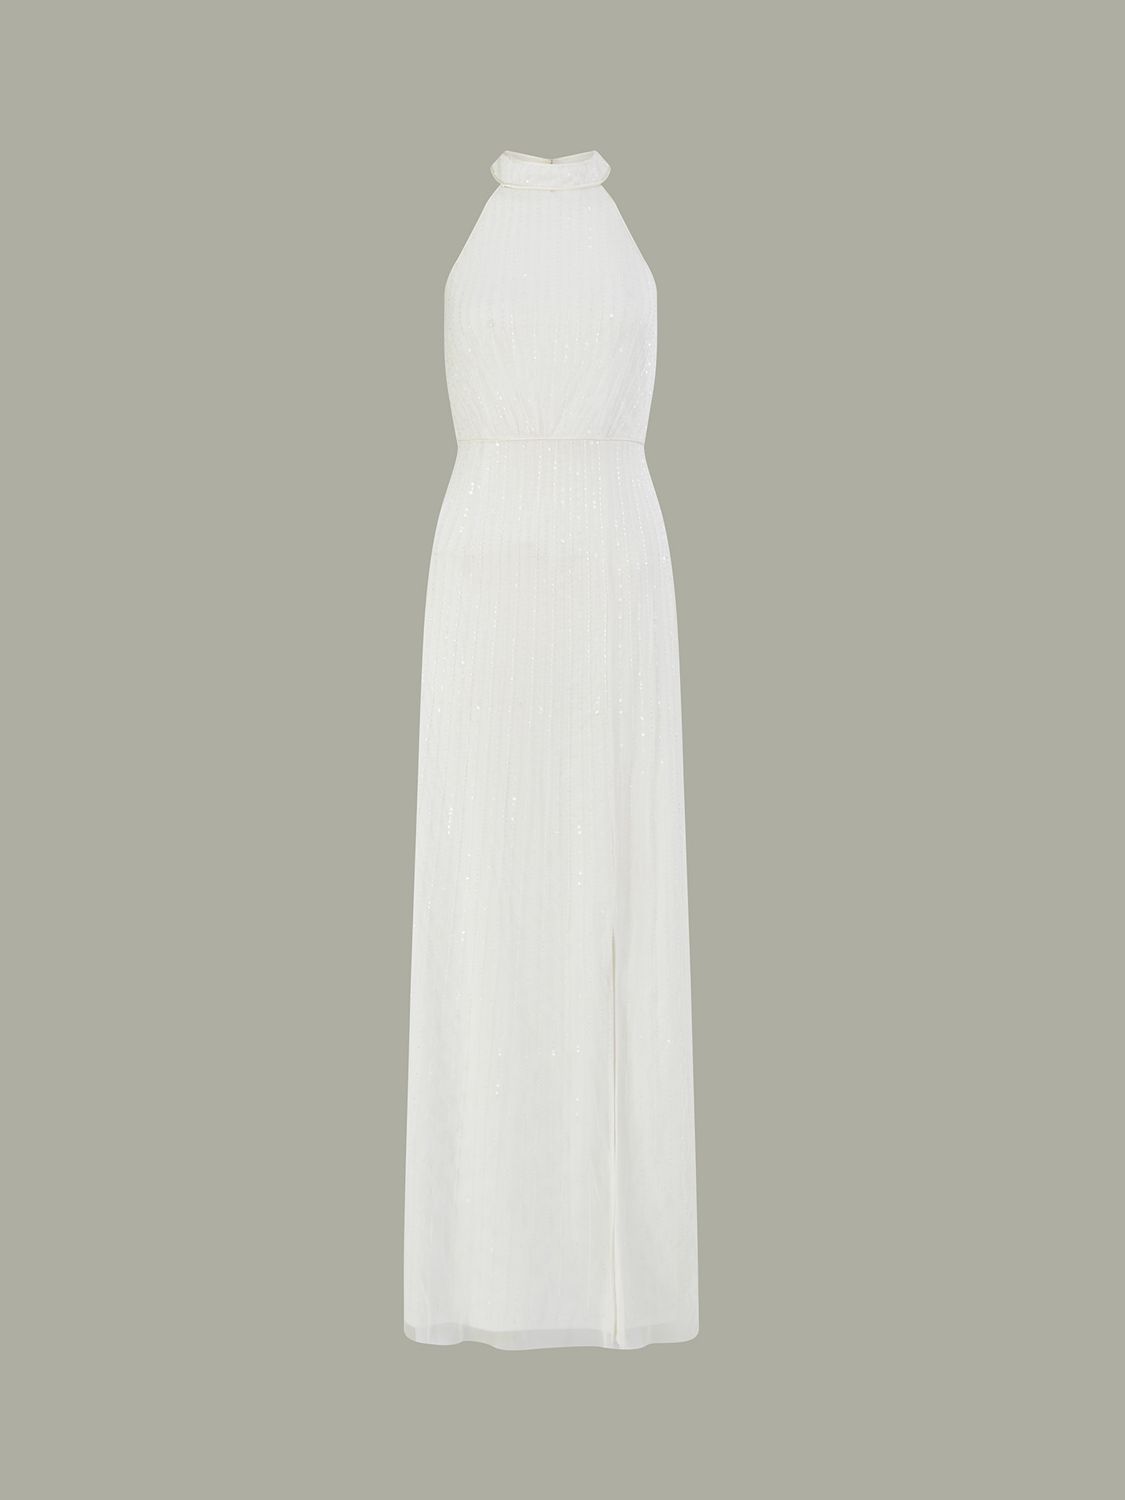 Monsoon Nikita Embellished Halter Neck Wedding Dress, Ivory, 6